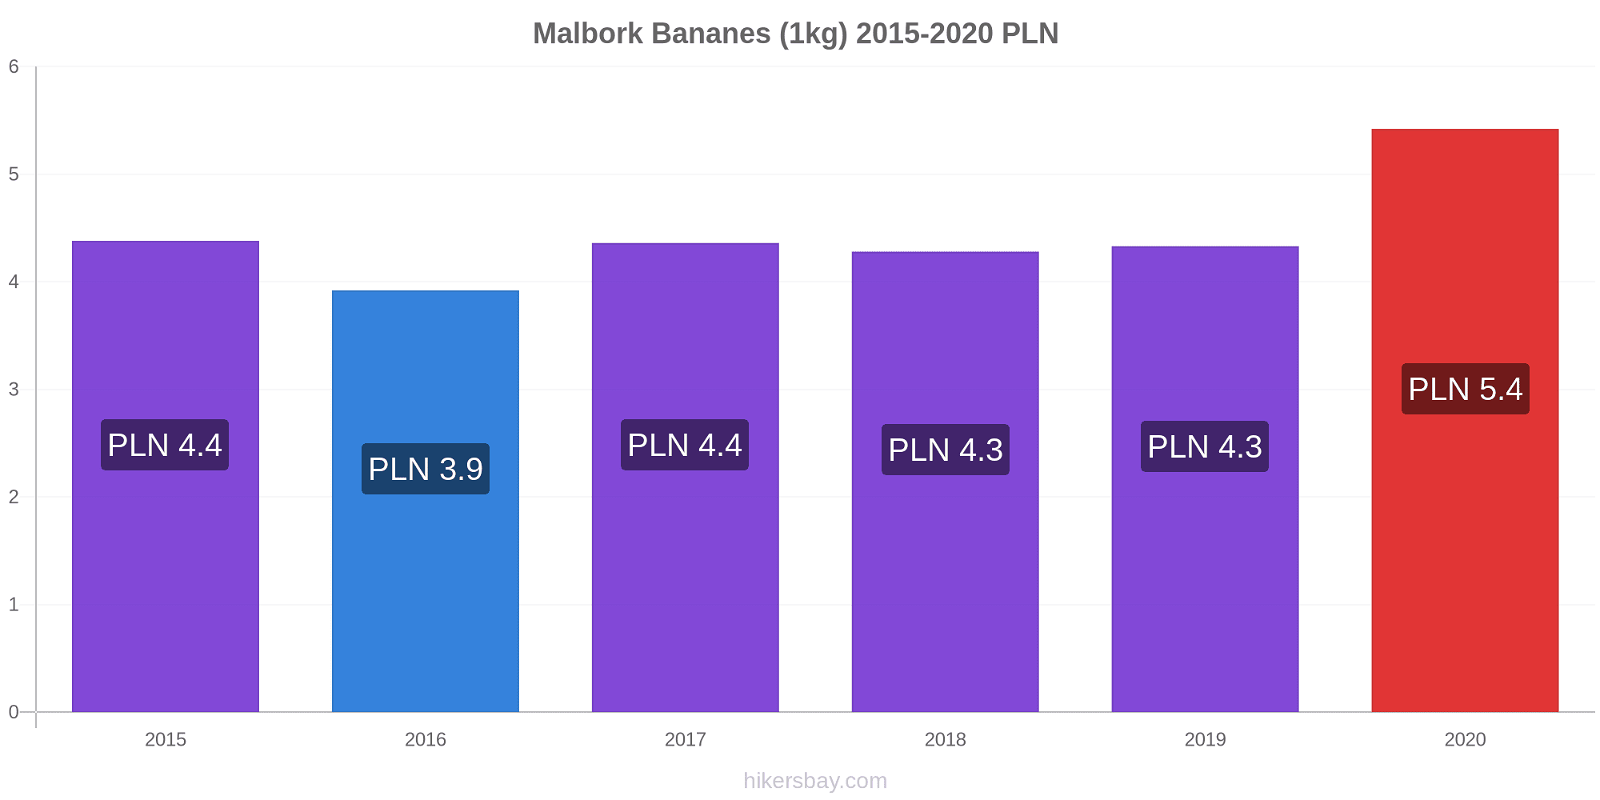 Malbork changements de prix Bananes (1kg) hikersbay.com